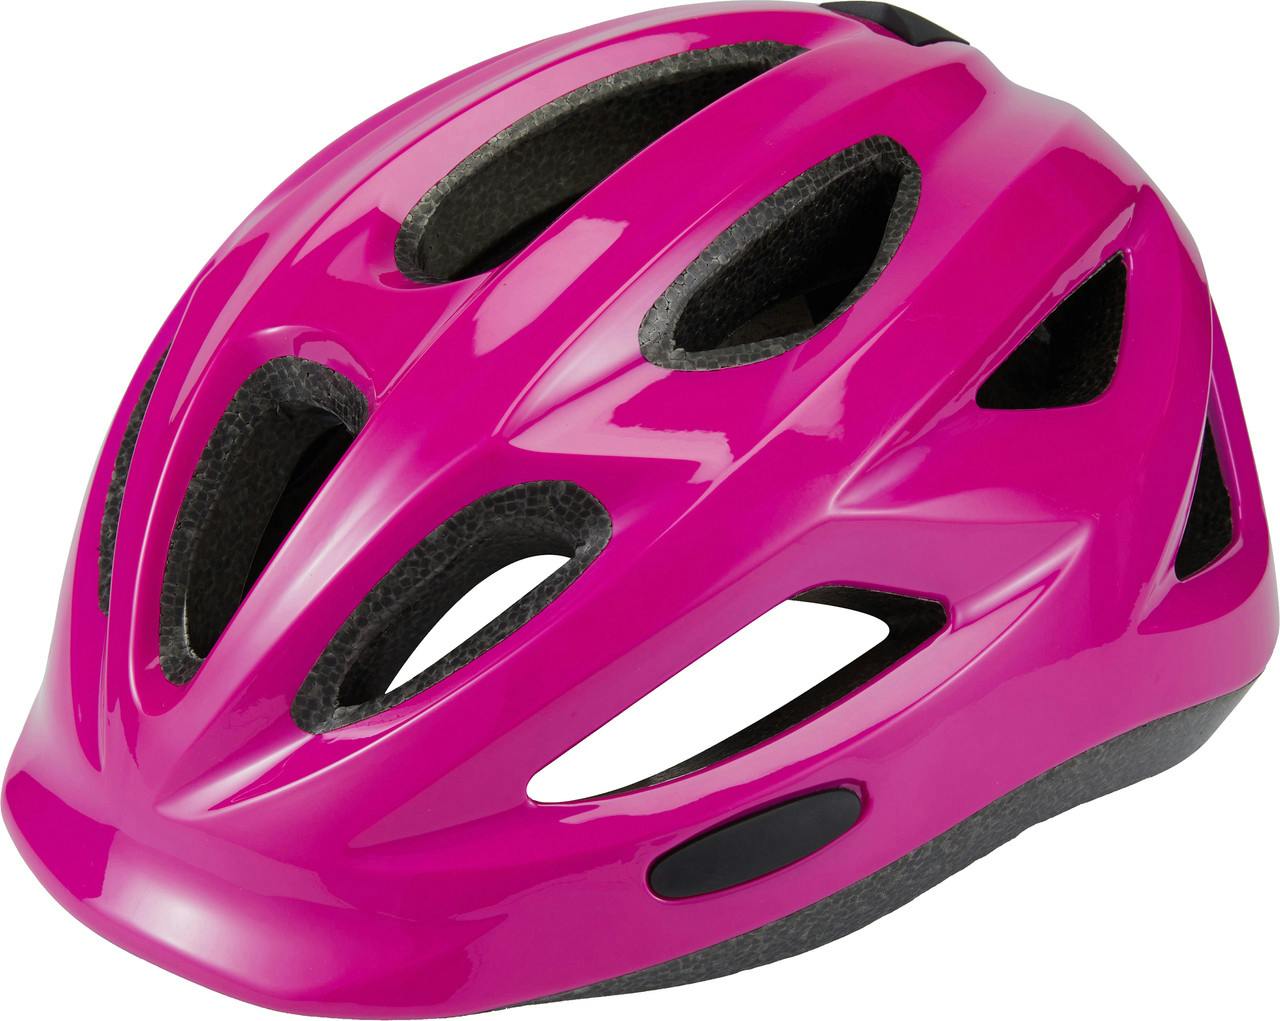 Ace Helmet Gloss Purple